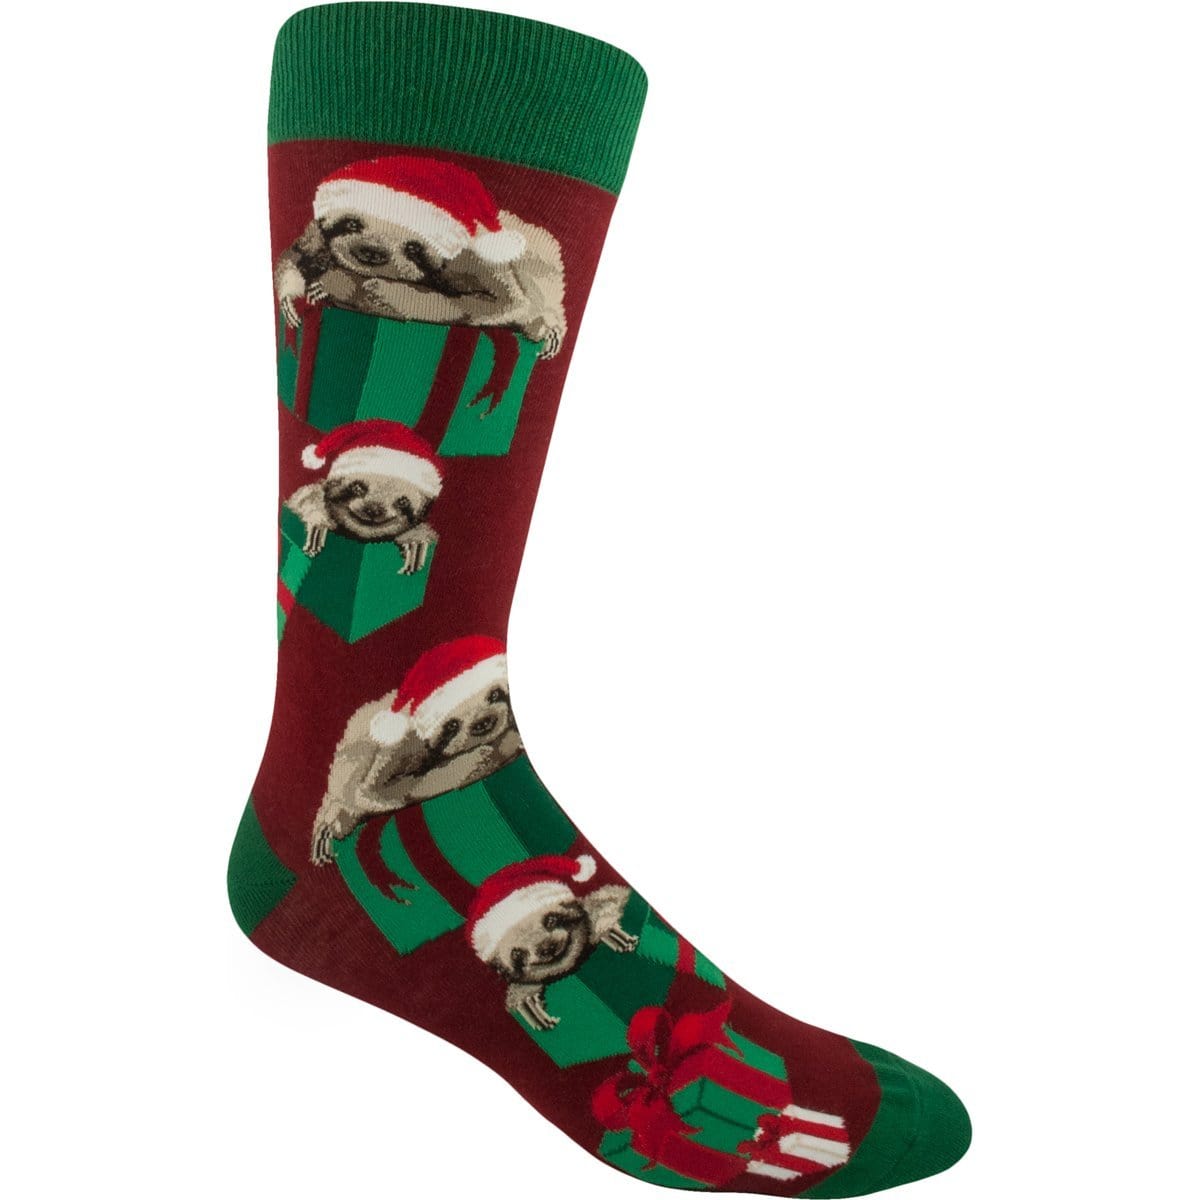 Santa Sloth Socks -Men’s Crew Sock red